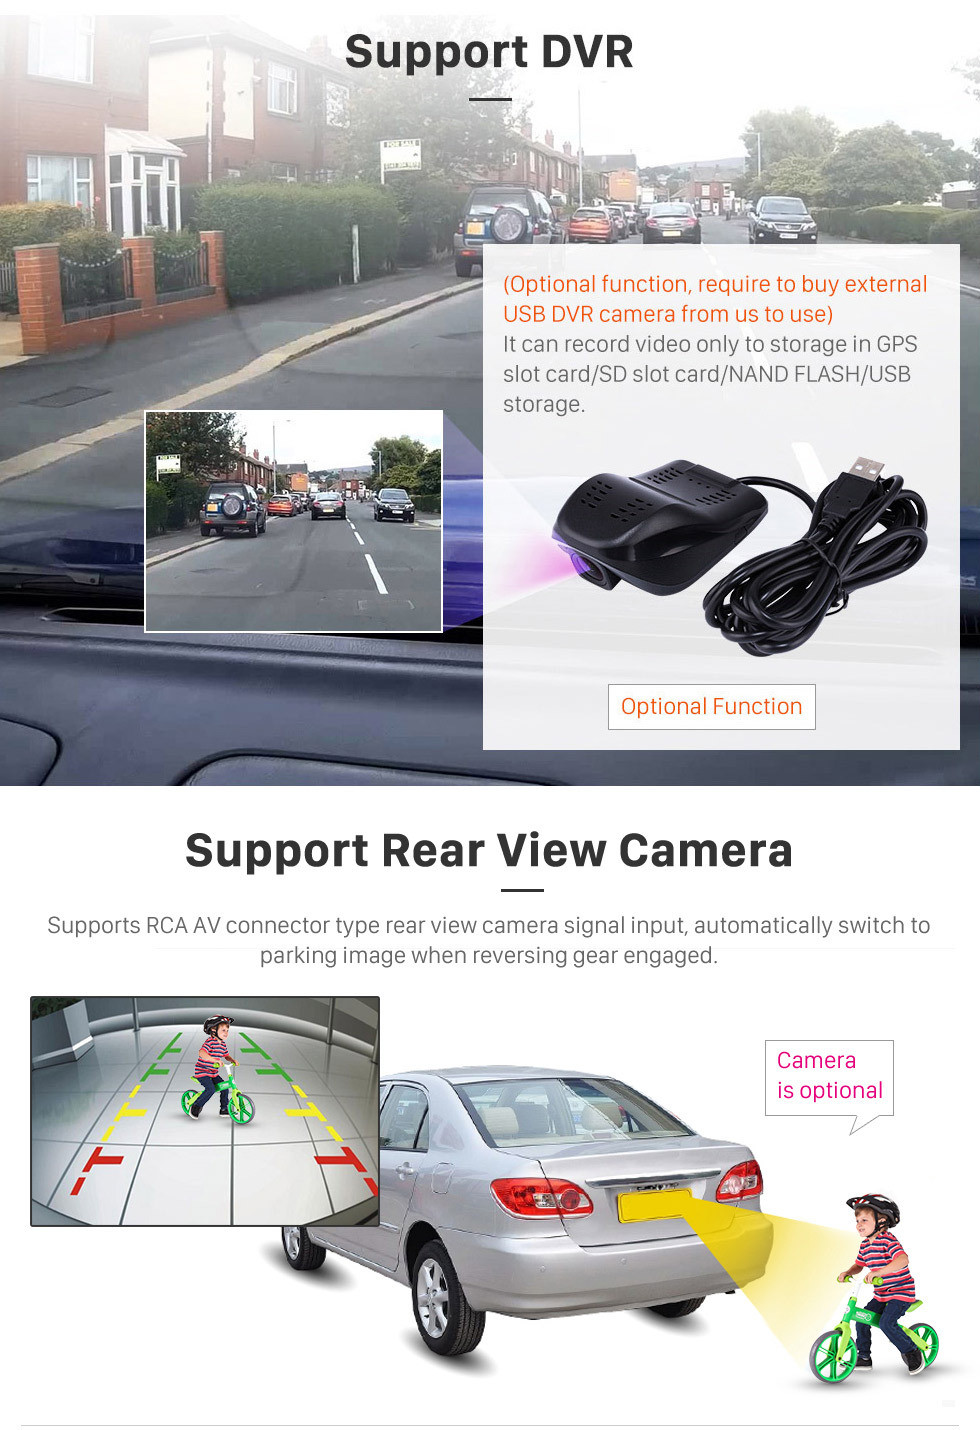 Seicane 10,1 pouces Android 10.0 HD Radio tactile Navigation GPS pour 2013-2016 Changan CS75 avec Bluetooth WIFI prise en charge Carplay SWC Miroir Lien